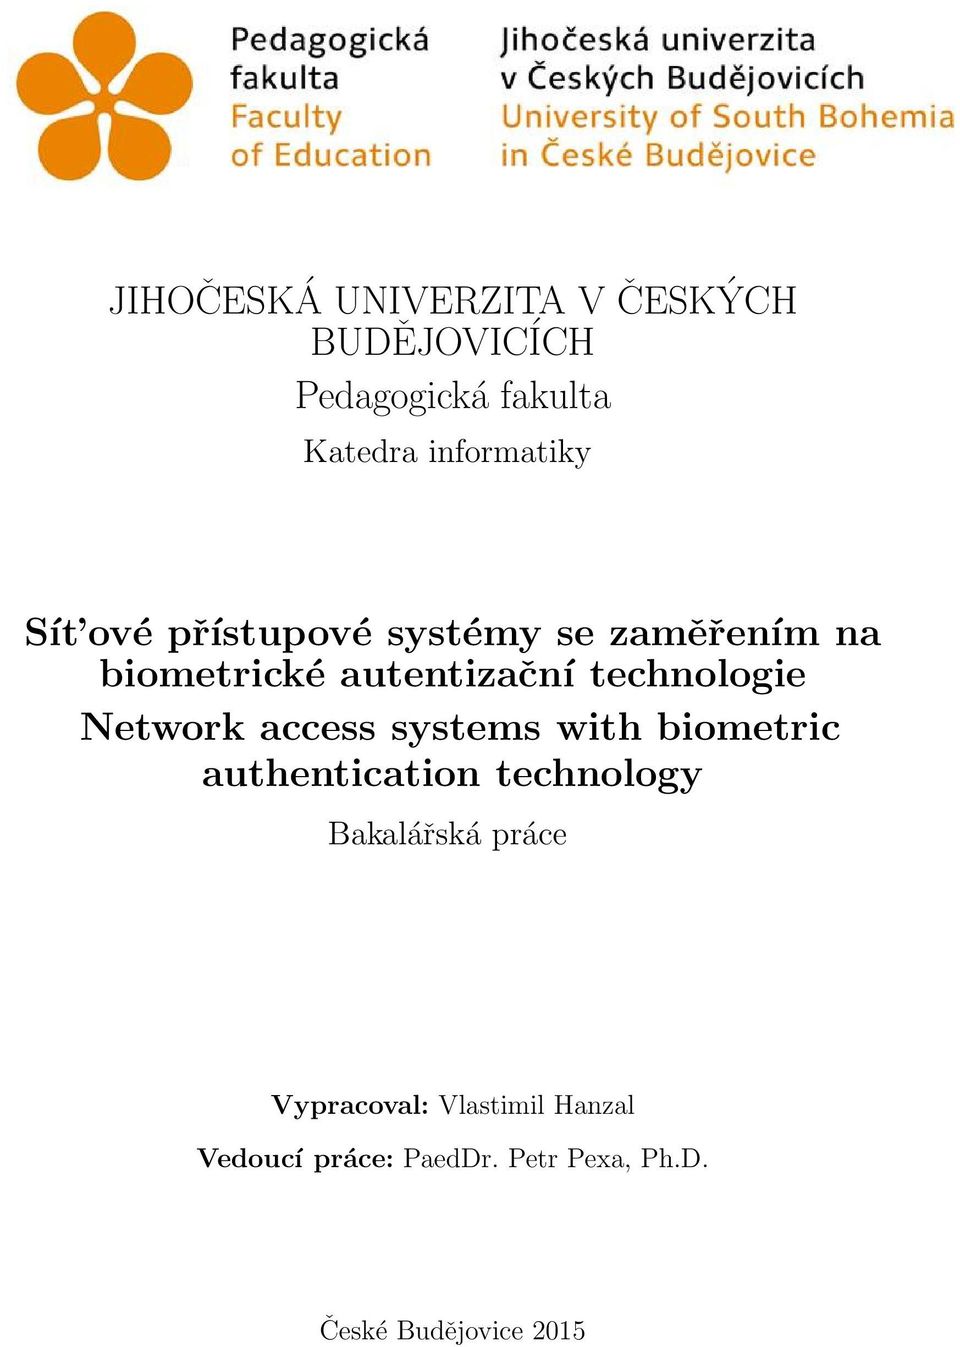 Network access systems with biometric authentication technology Bakalářská práce